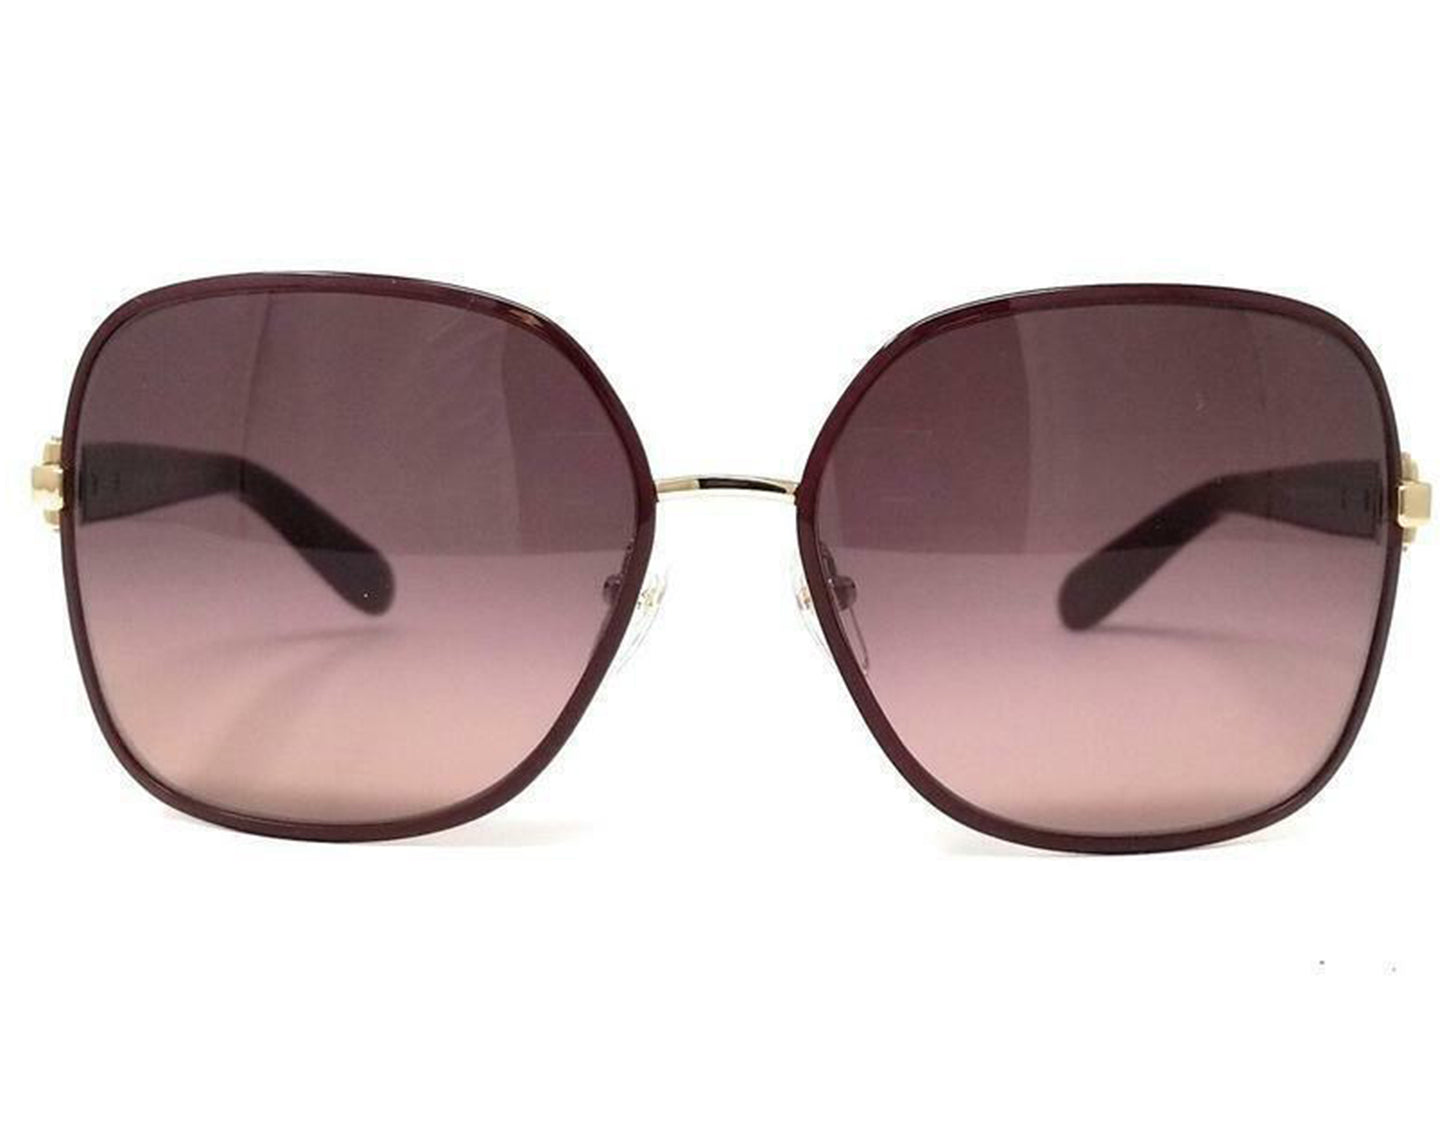 Salvatore Ferragamo SF150S 728 59mm New Sunglasses